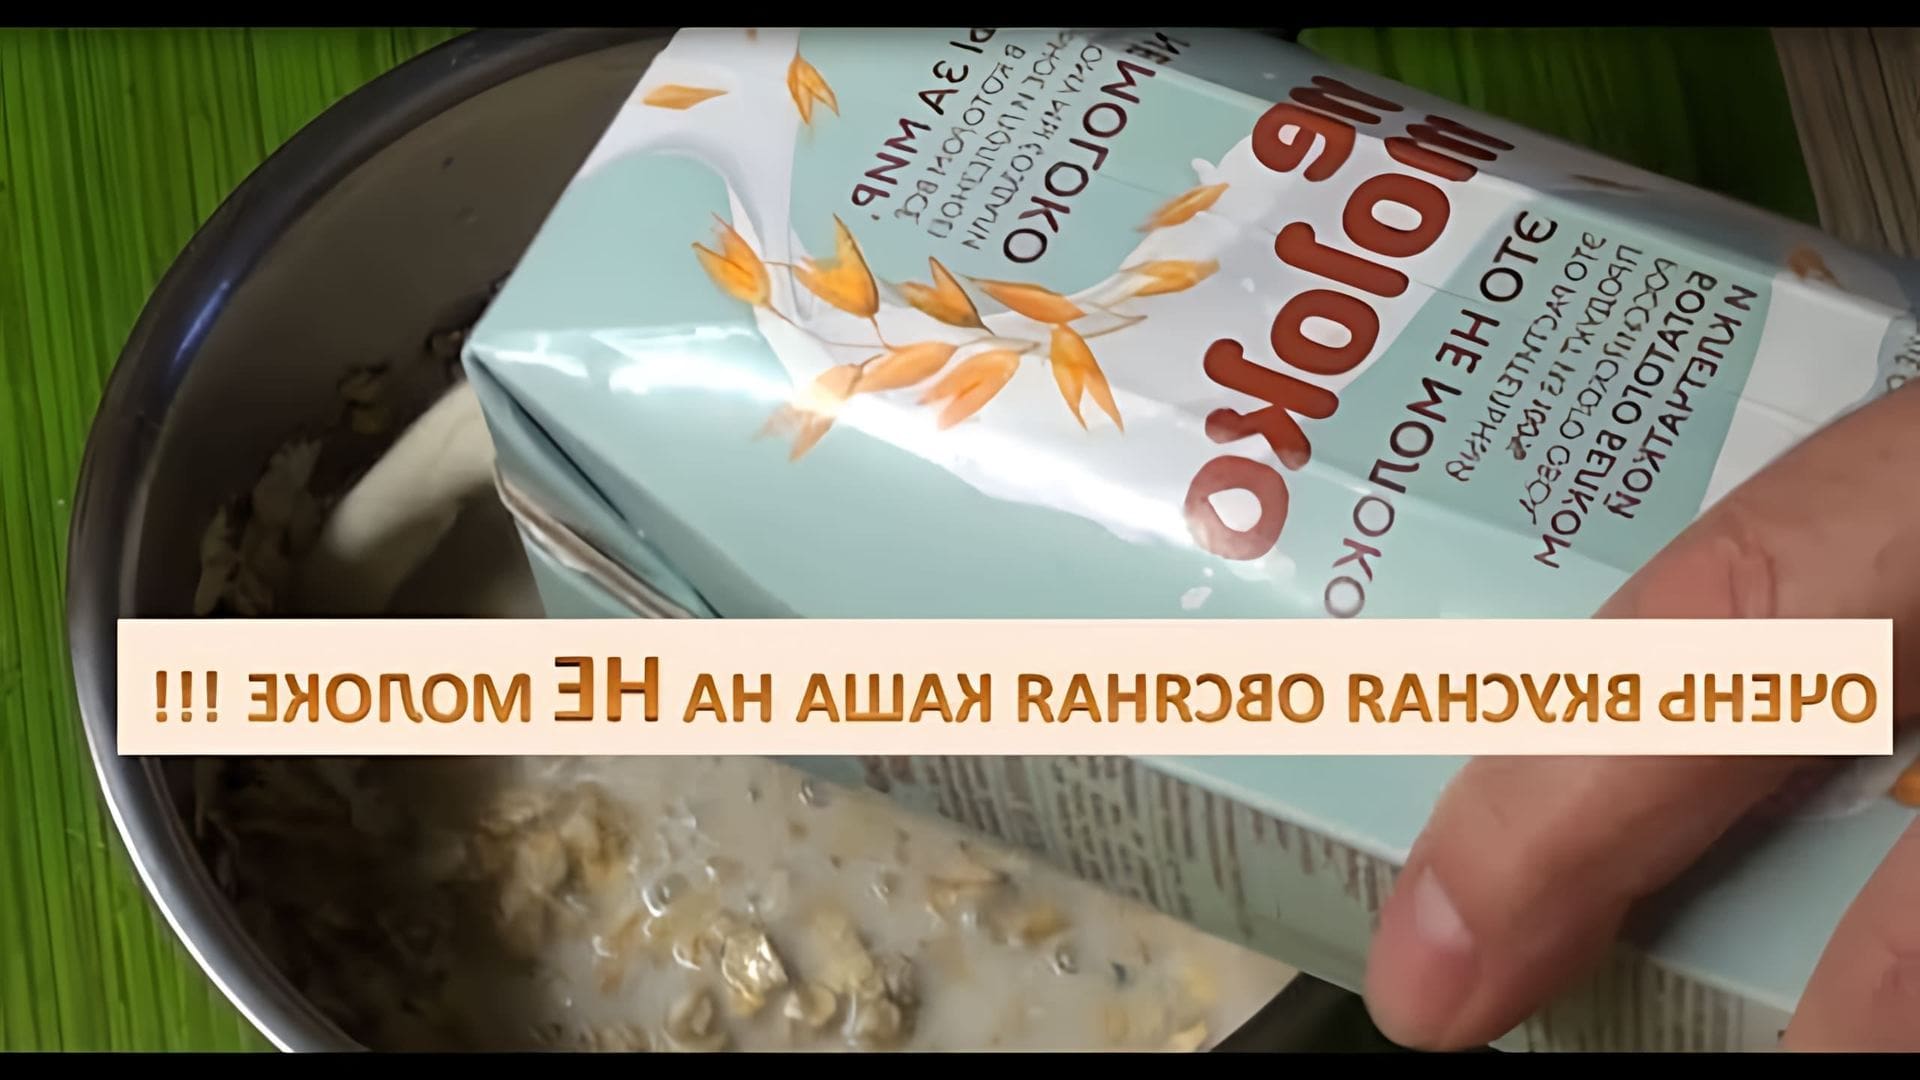 В этом видео демонстрируется приготовление очень вкусной и полезной овсяной каши на не молоке